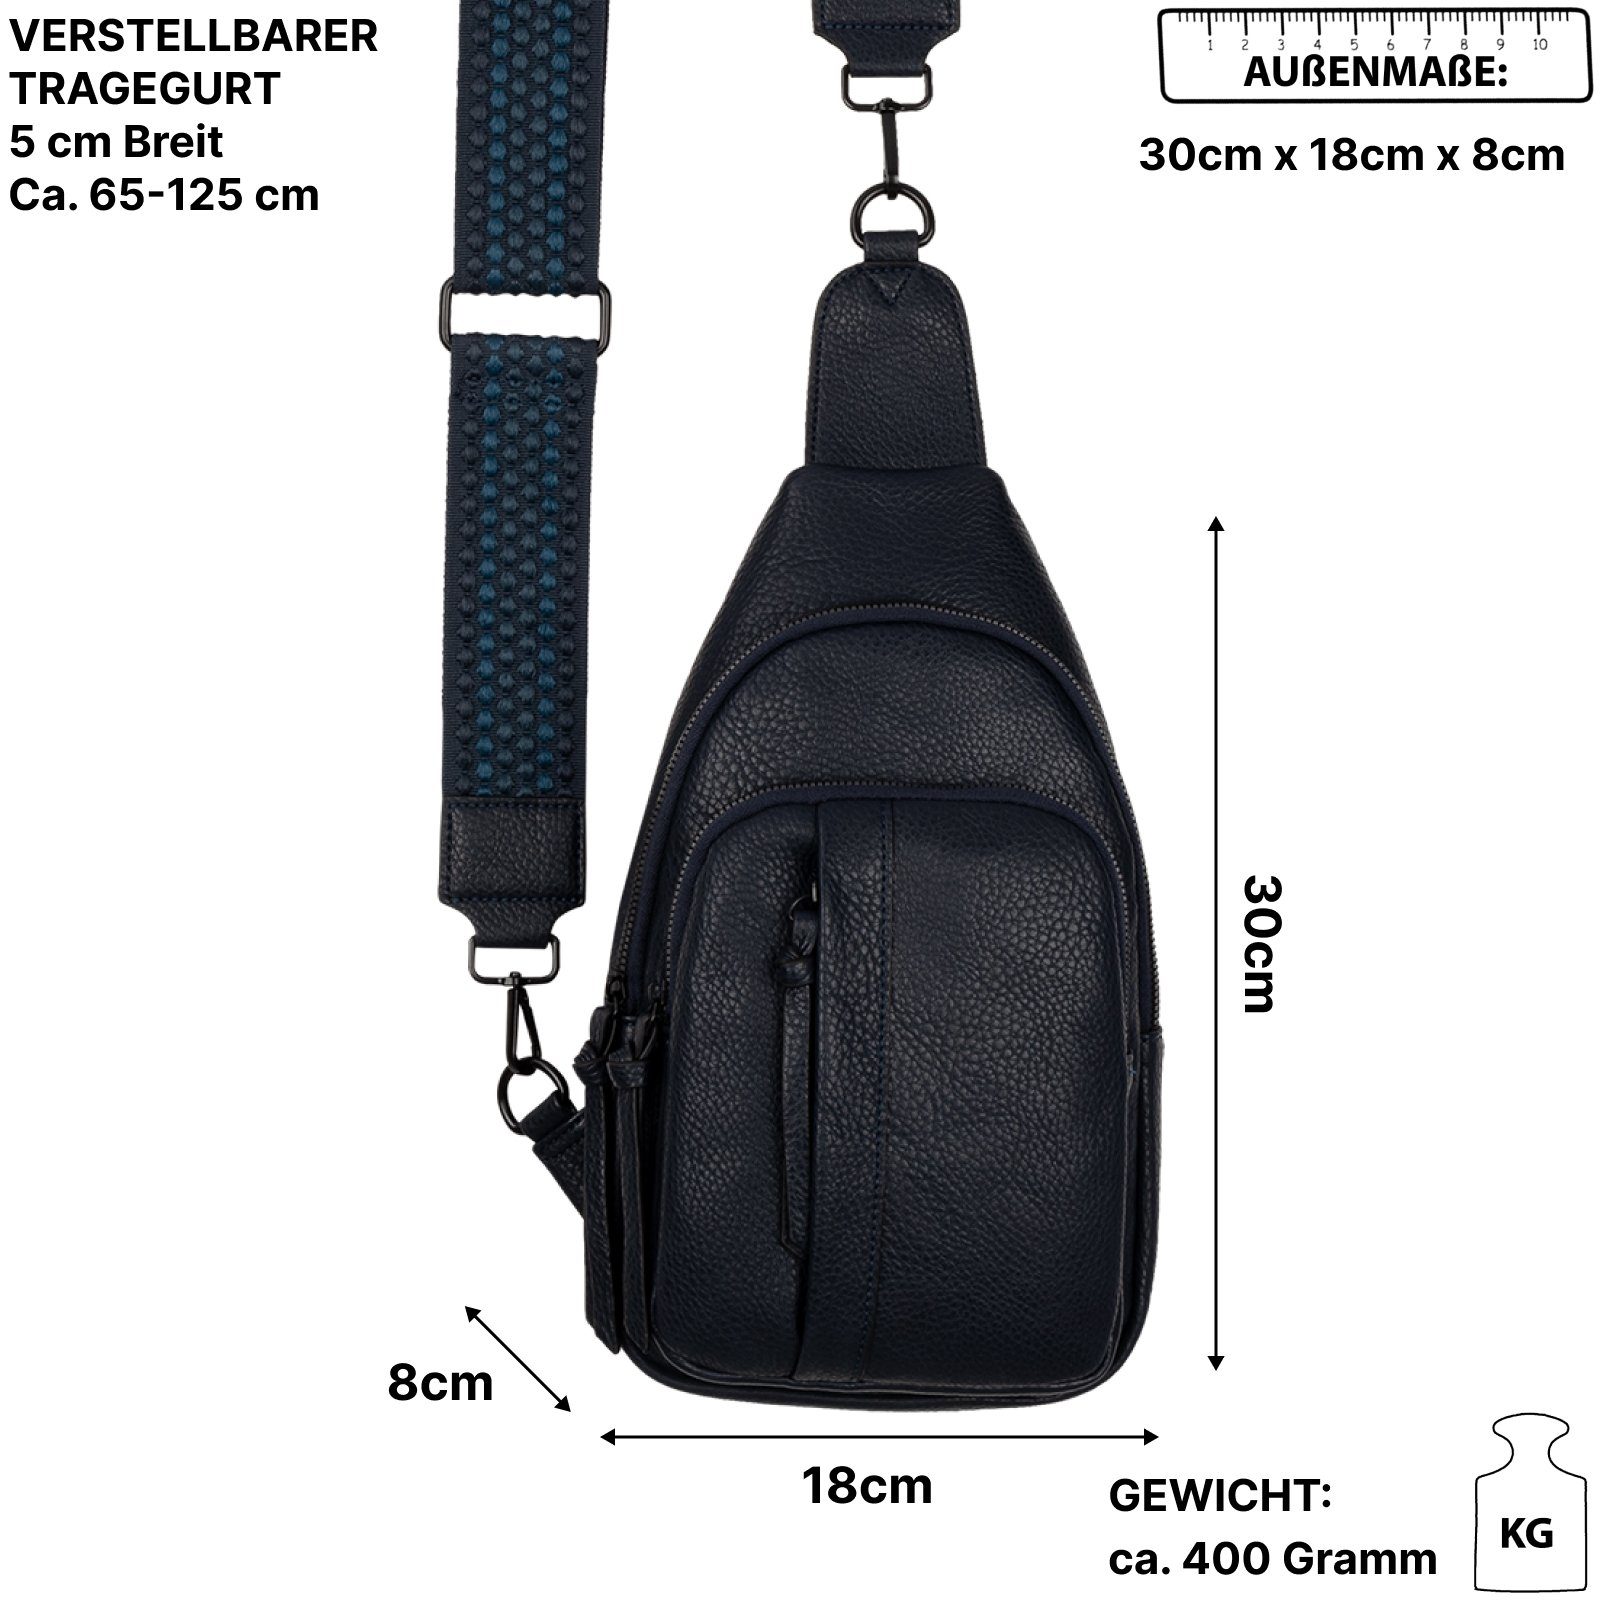 EAAKIE Umhängetasche Brusttasche Umhängetasche Schultertasche D.BLUE Bag Schultertasche, als Kunstleder, Cross CrossOver, tragbar Umhängetasche Body